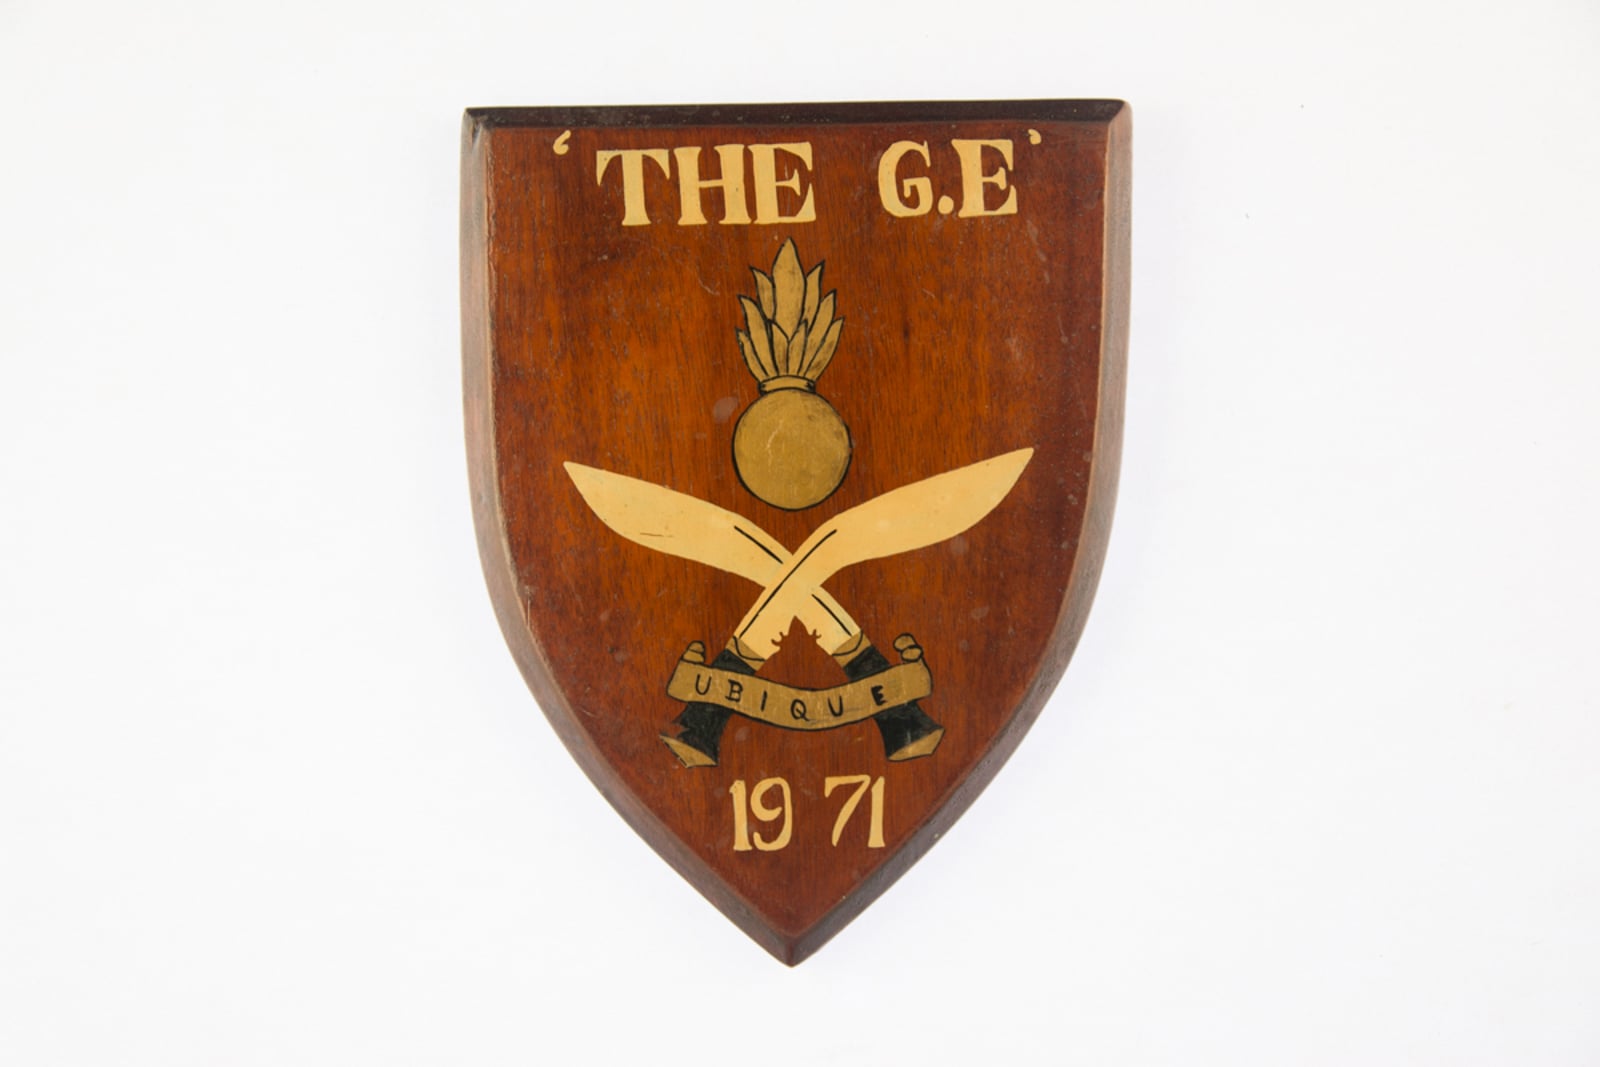 The G.E. Ubique 1971 Plaque